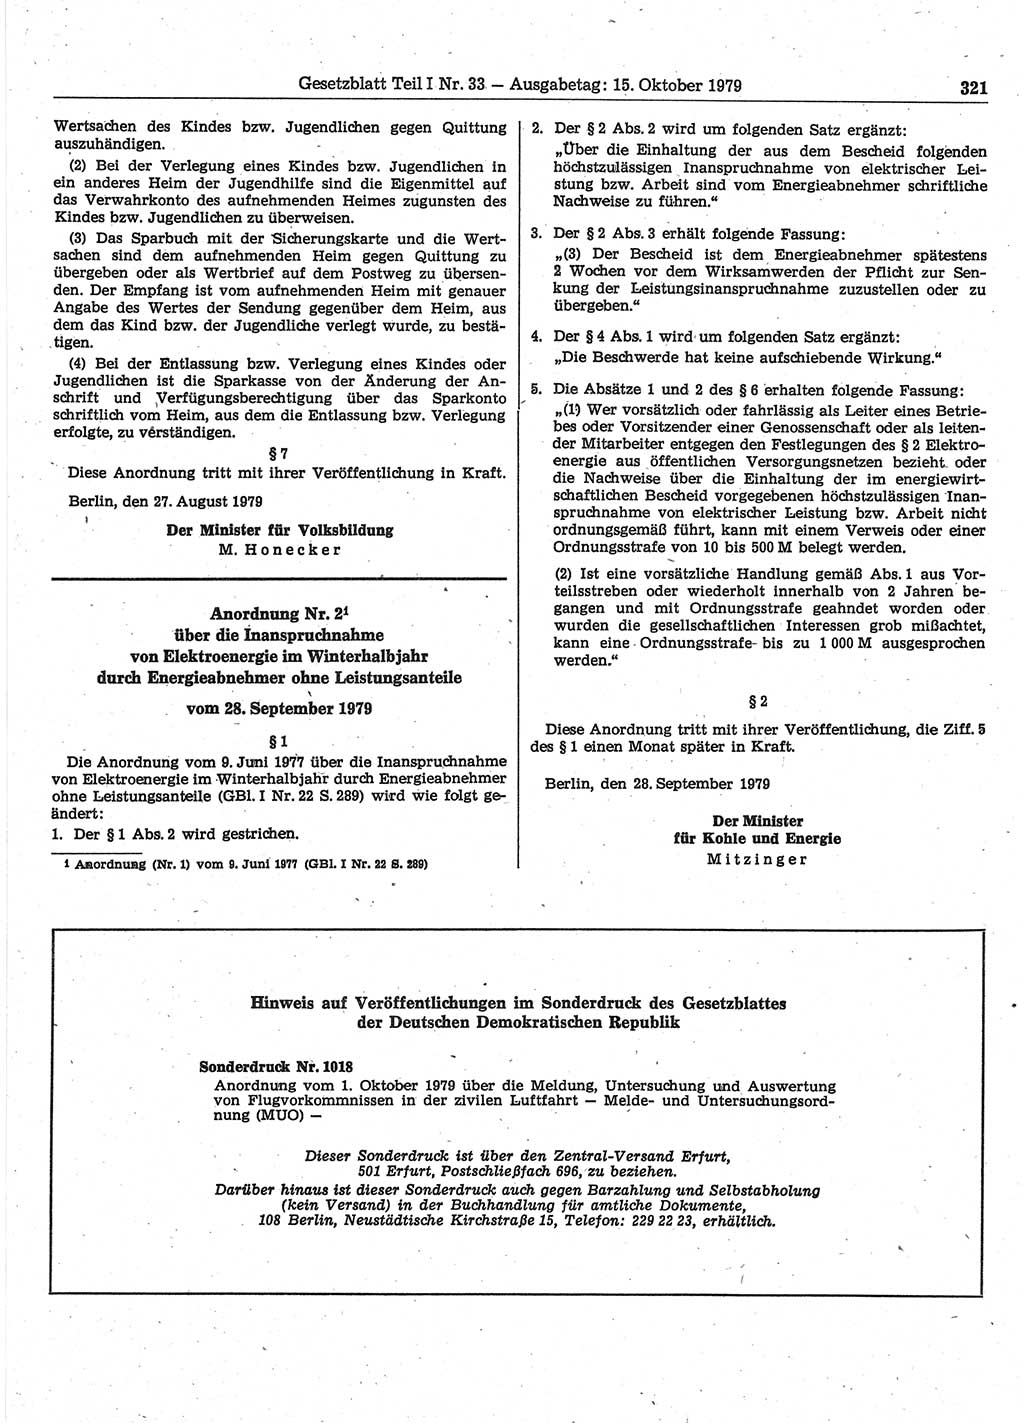 Gesetzblatt (GBl.) der Deutschen Demokratischen Republik (DDR) Teil Ⅰ 1979, Seite 321 (GBl. DDR Ⅰ 1979, S. 321)